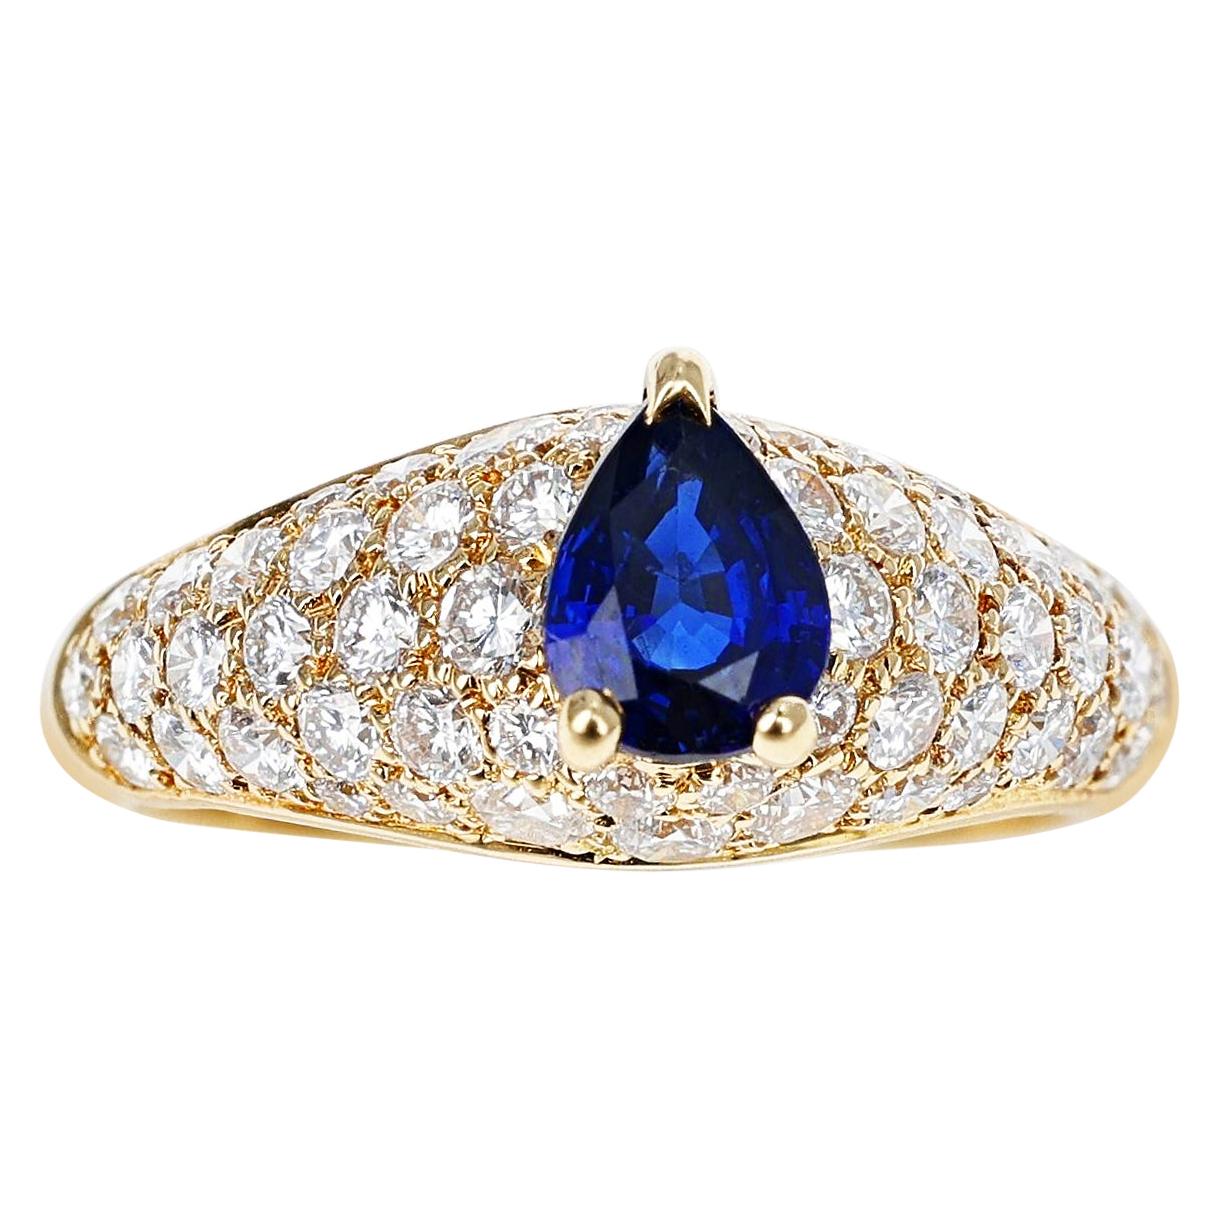 Cartier, bague française en or jaune 18 carats avec saphir bleu en forme de poire et diamants